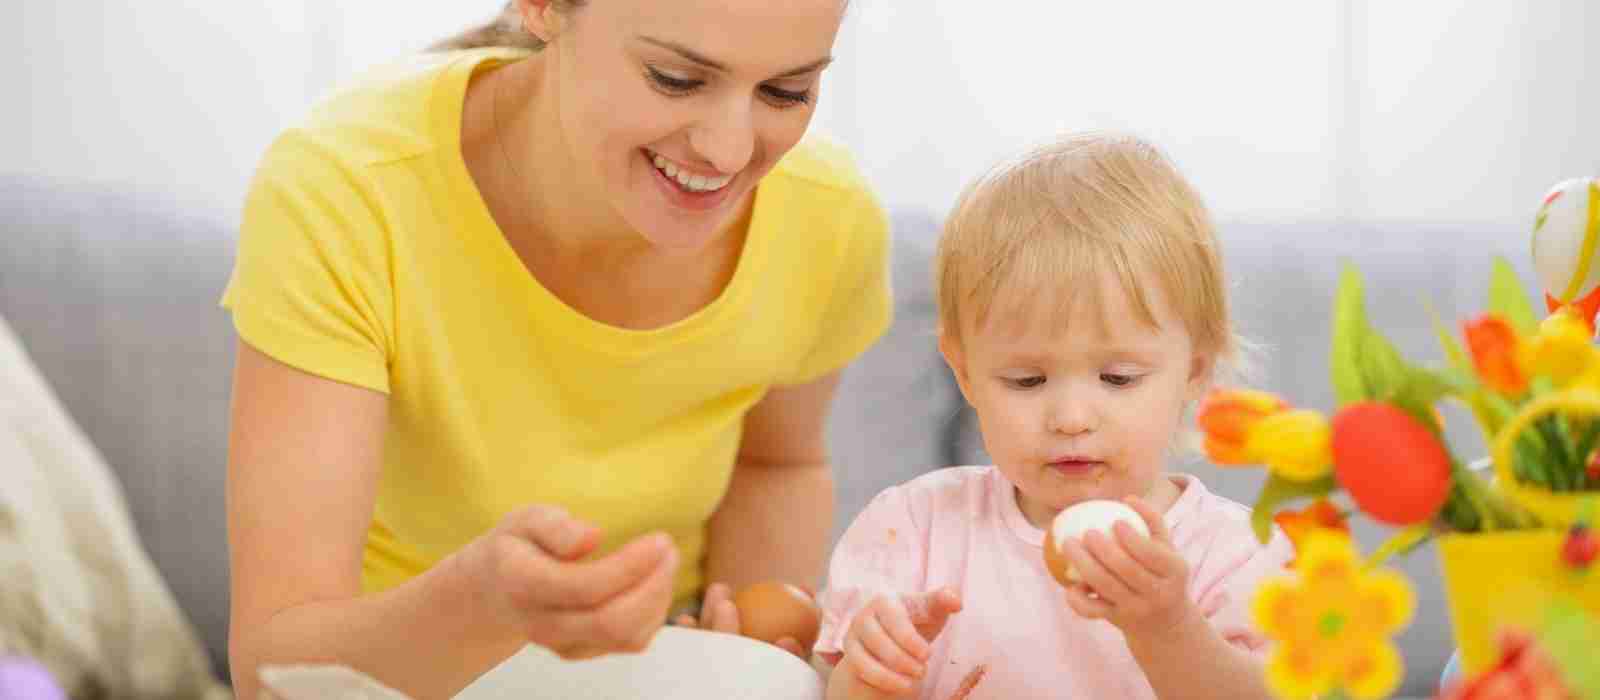 Can Eggs Cause Diaper Rash